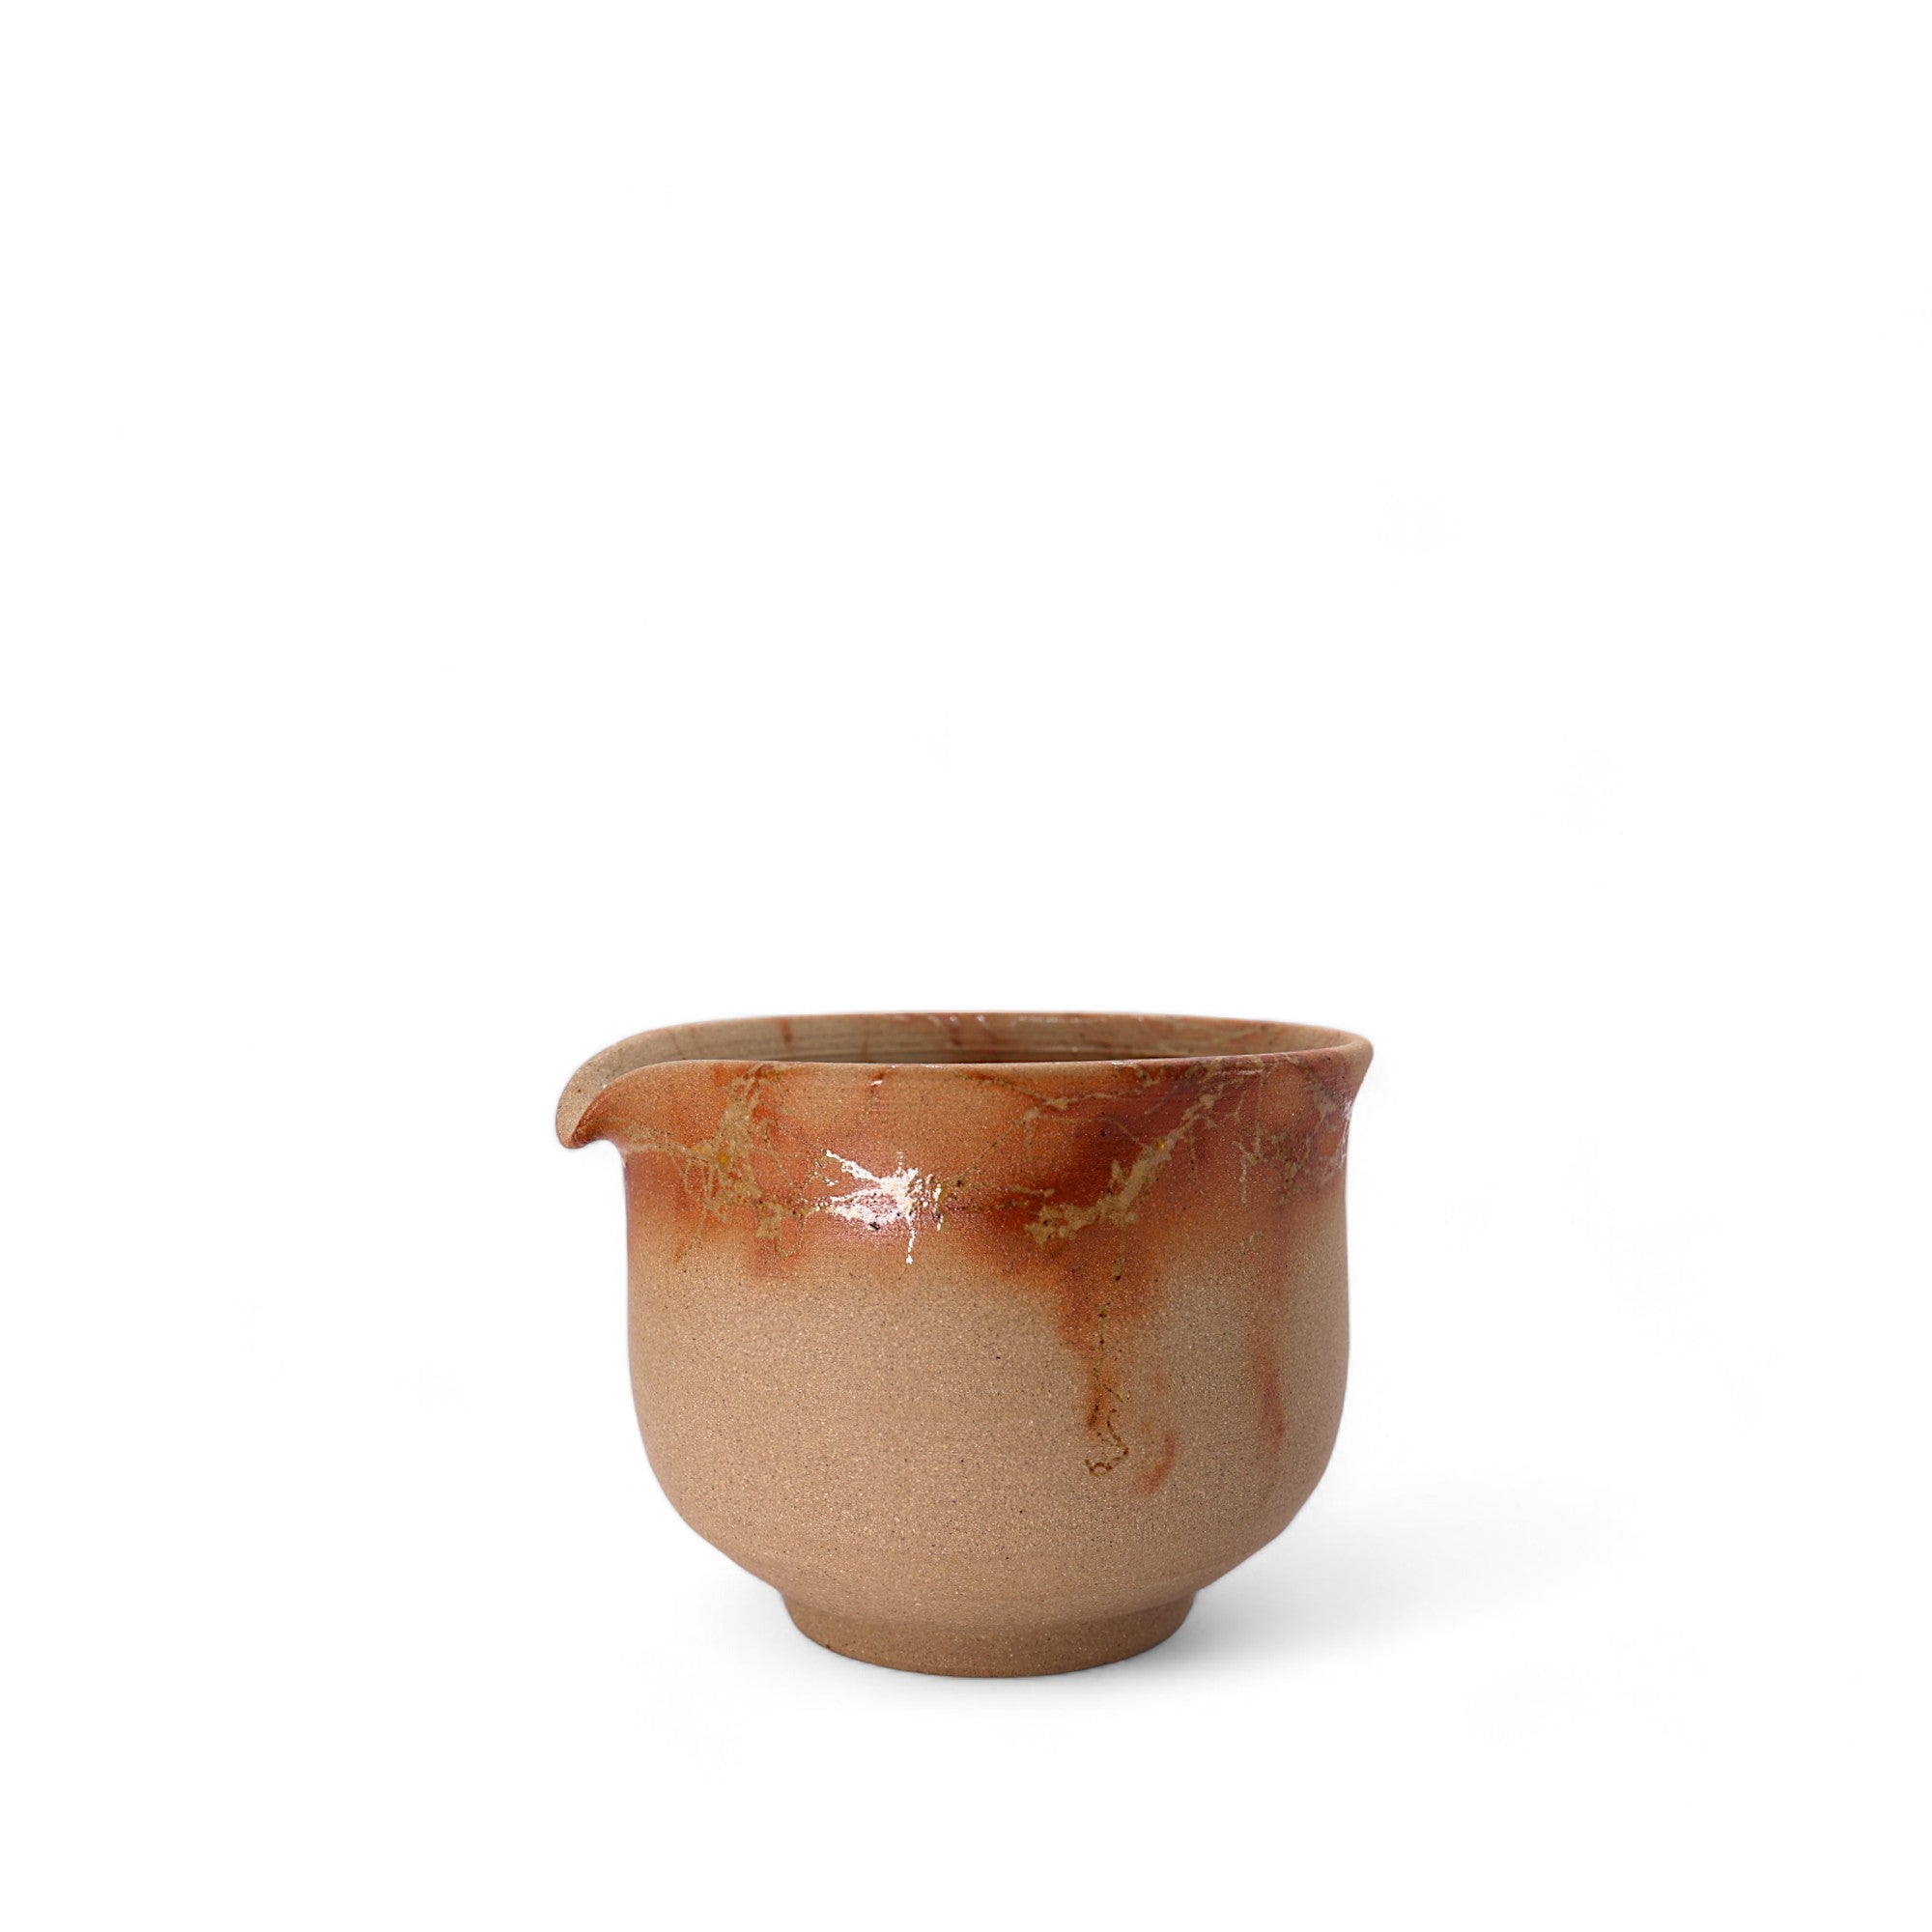 Japanese Handmade Tea Pitcher (fairness cup) -Kaen